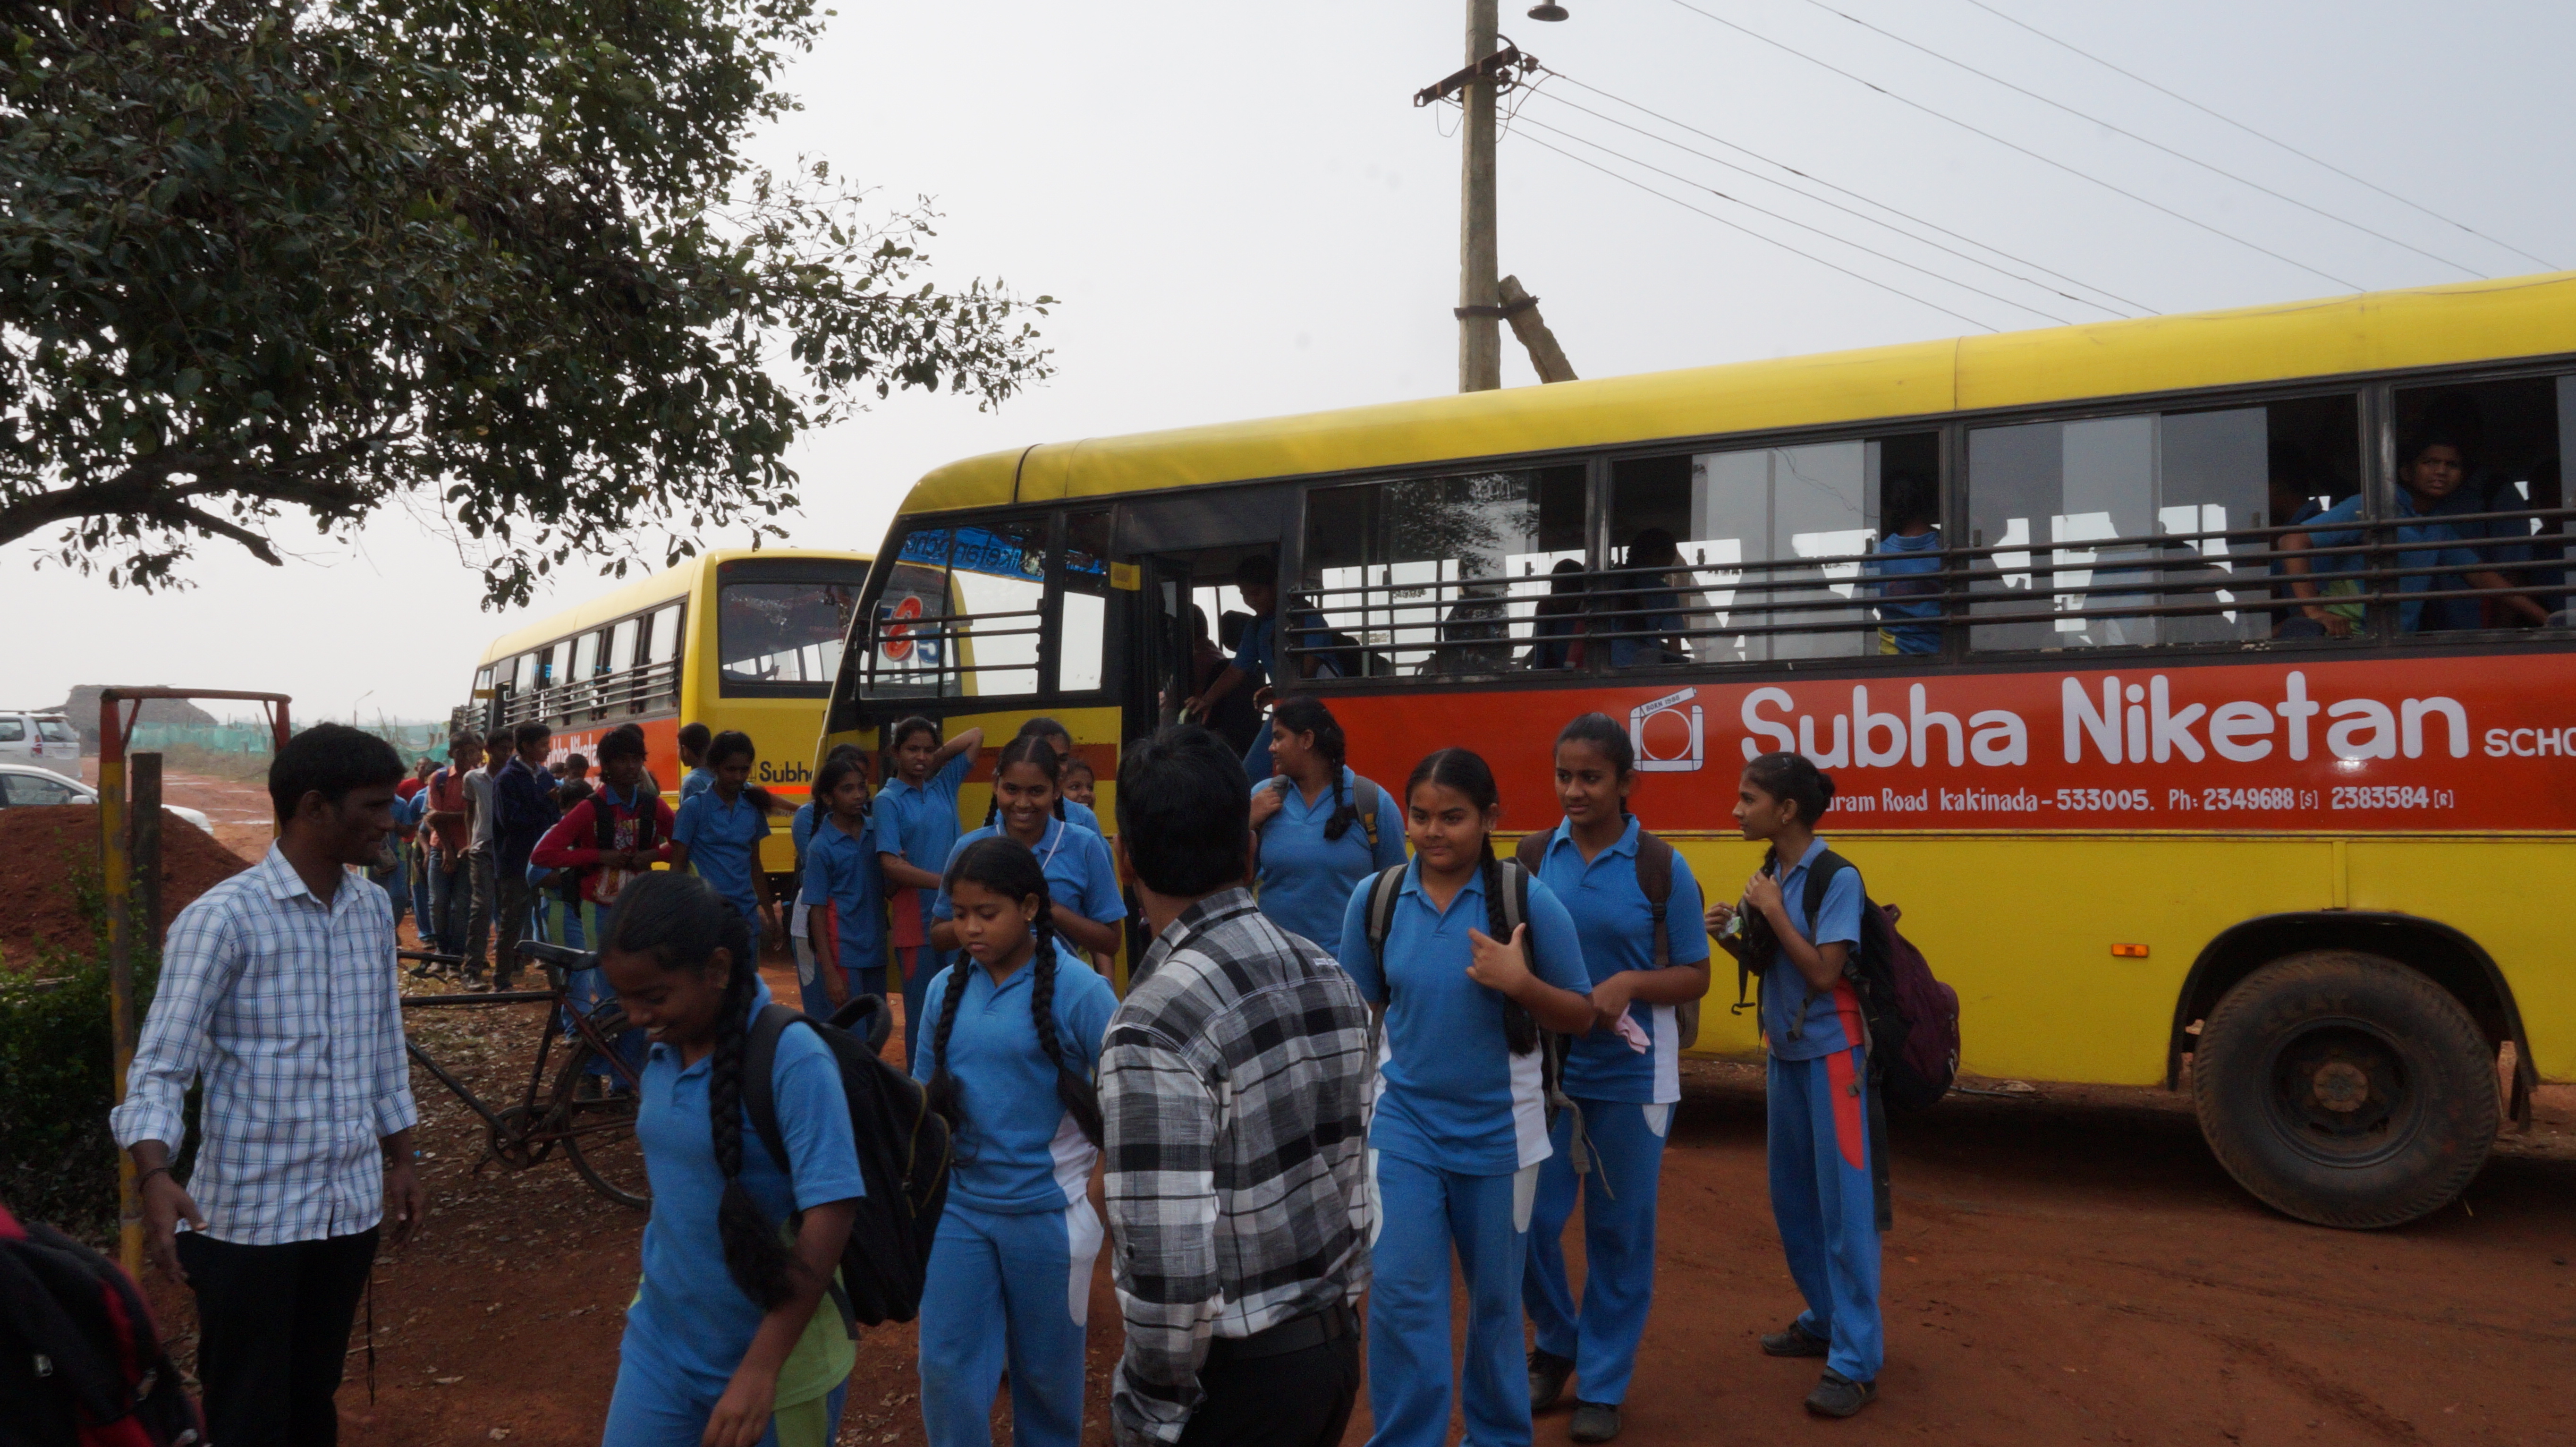 Field Trip To Mada Forest - Subha Niketan School Kids